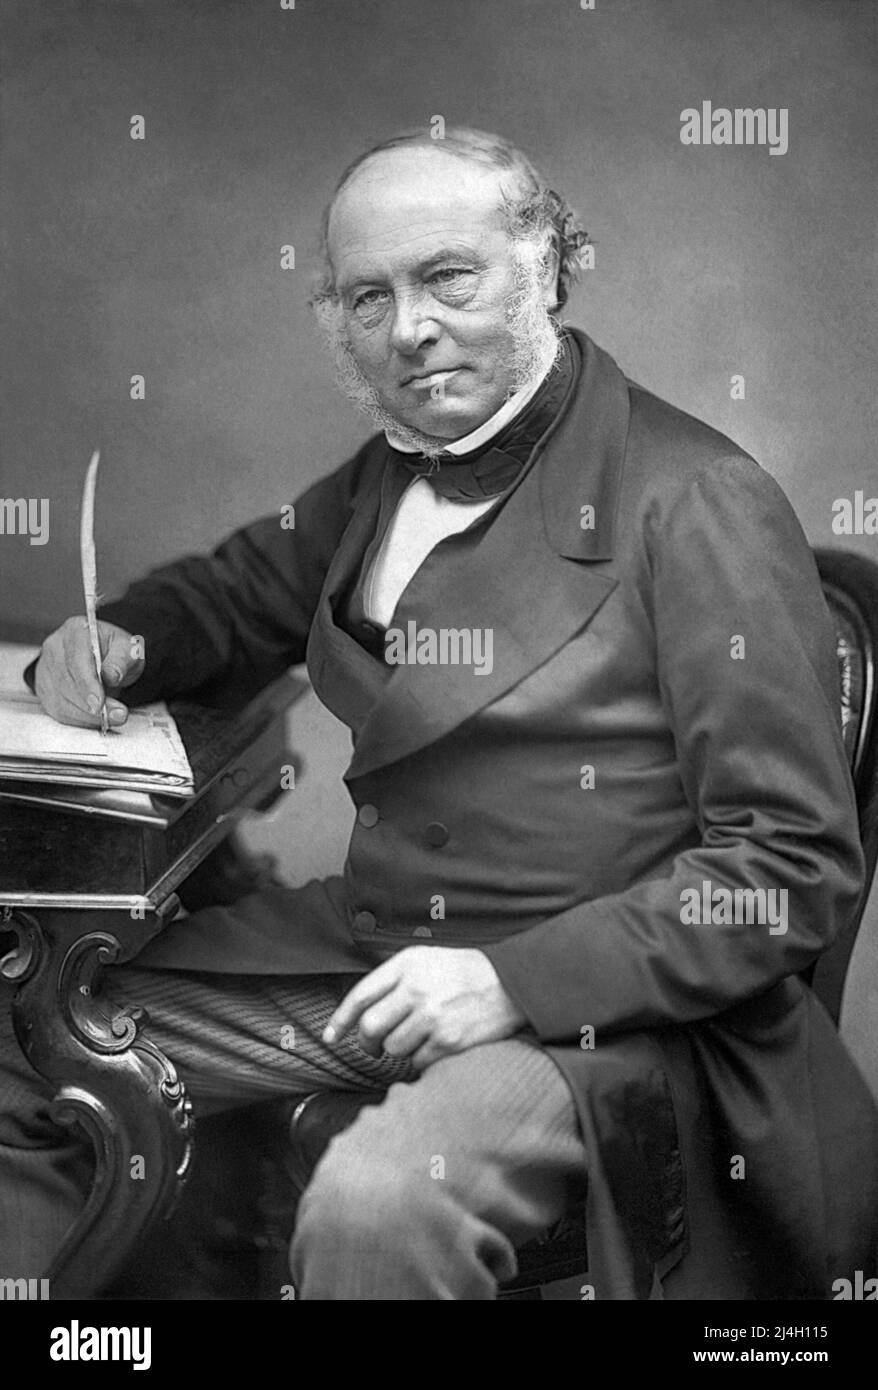 Sir Rowland Hill, (1795 – 1879) enseignant anglais, inventeur et réformateur social. Il est crédité de l'origine des concepts de base du service postal moderne, y compris l'invention du timbre-poste. Banque D'Images